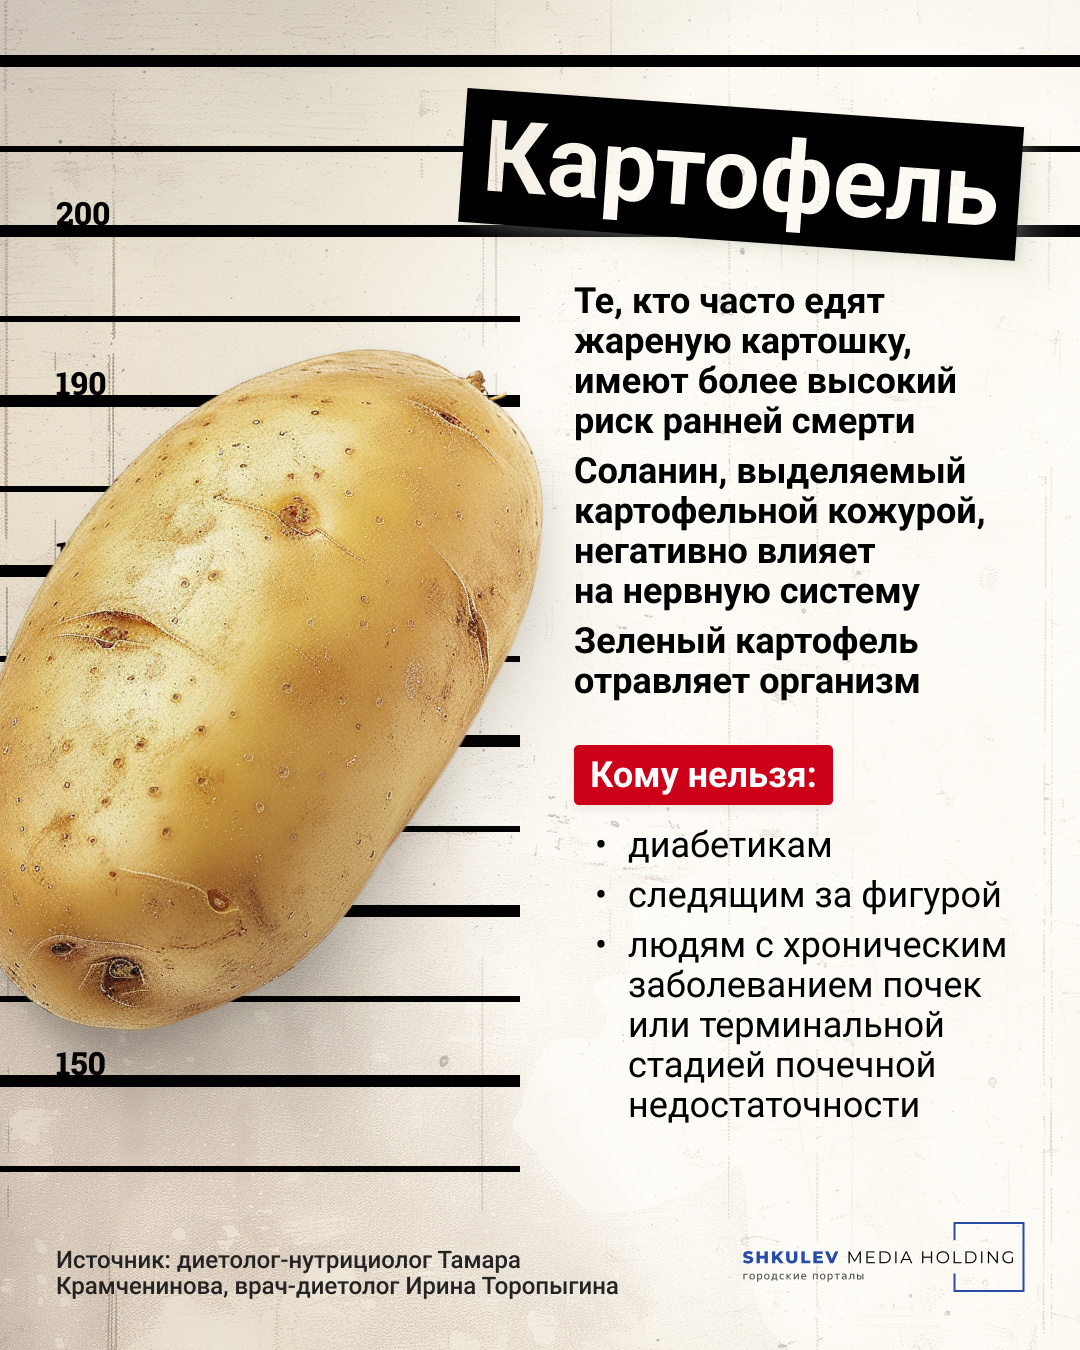 Картофель — законопослушный гражданин, но и от него бывает вред